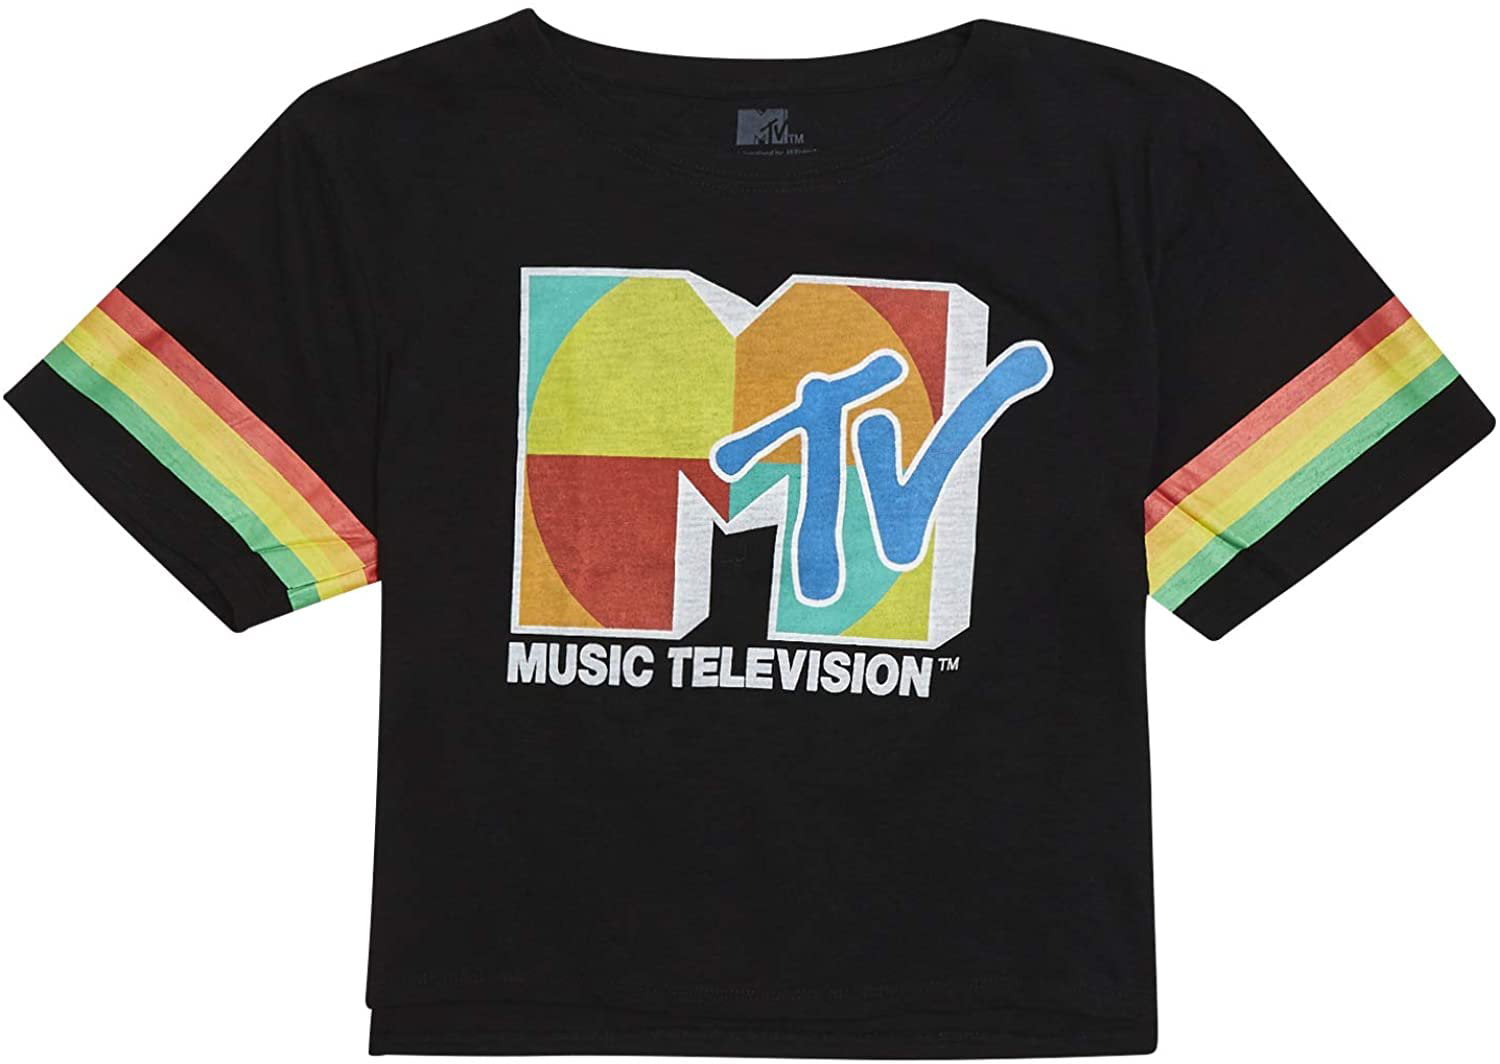 I Want My Logo Ribbed Yoke Ringer Short Sleeve Tee MTV Ladies Short Sleeve Shirt #TBT Ladies 1980s Clothing 